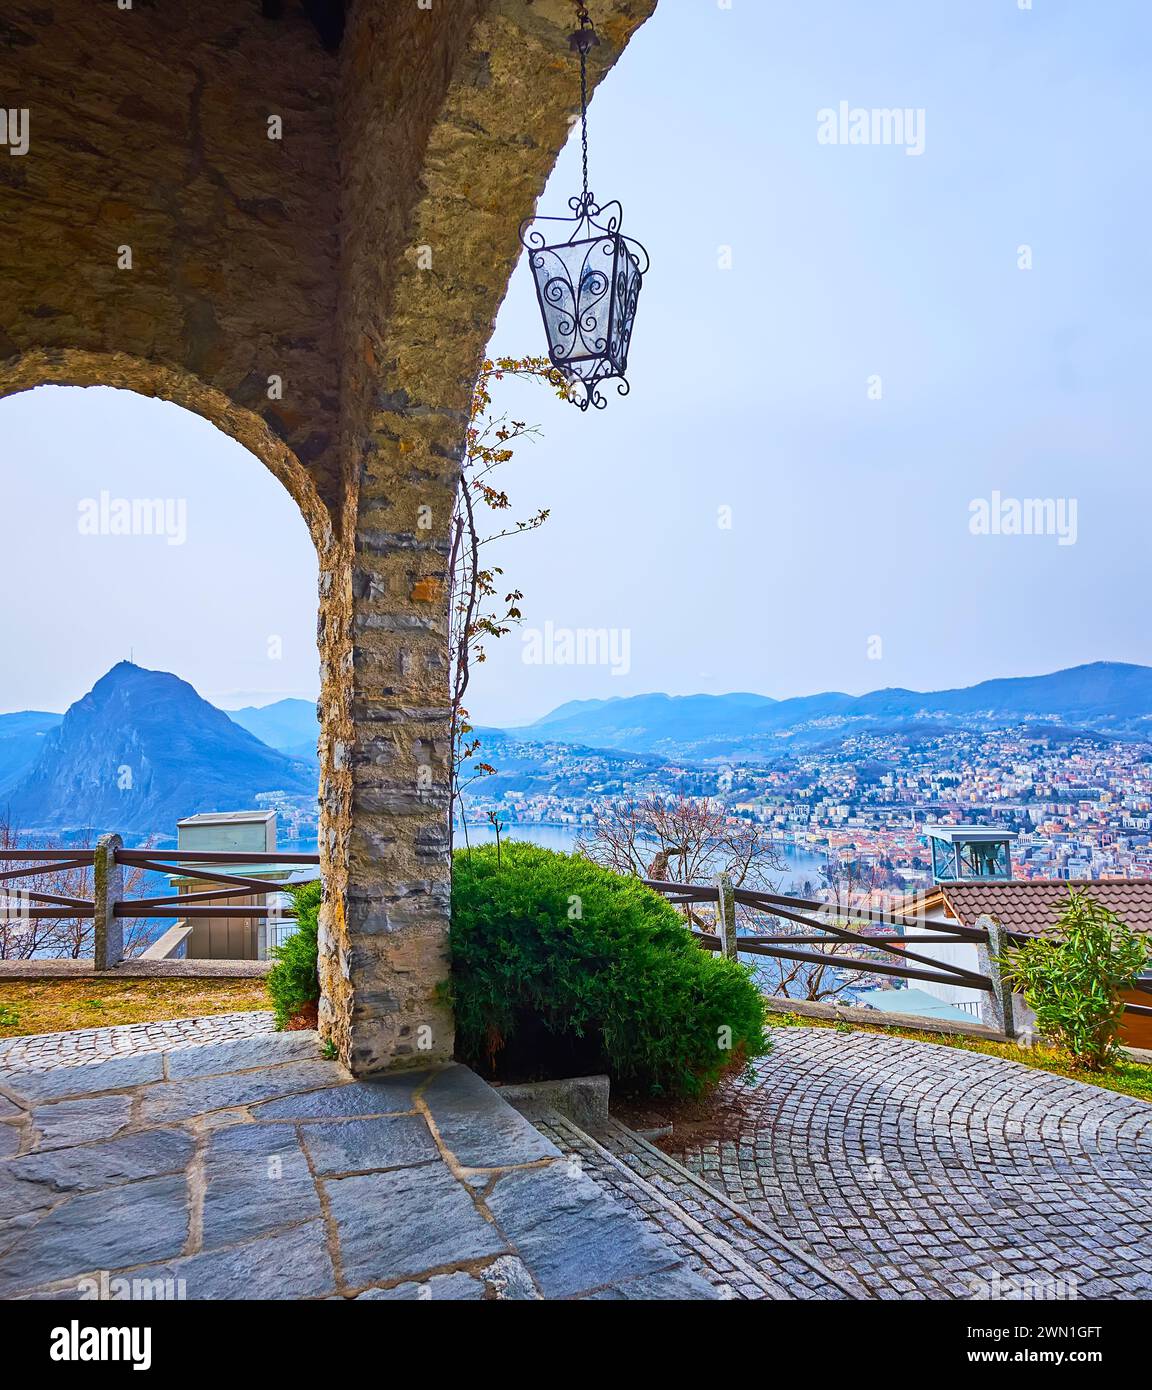 The old stone portico of Aldesago Church opens the view on Ceresio and scenic Monte San Salvatore, Lugano, Switzerland Stock Photo